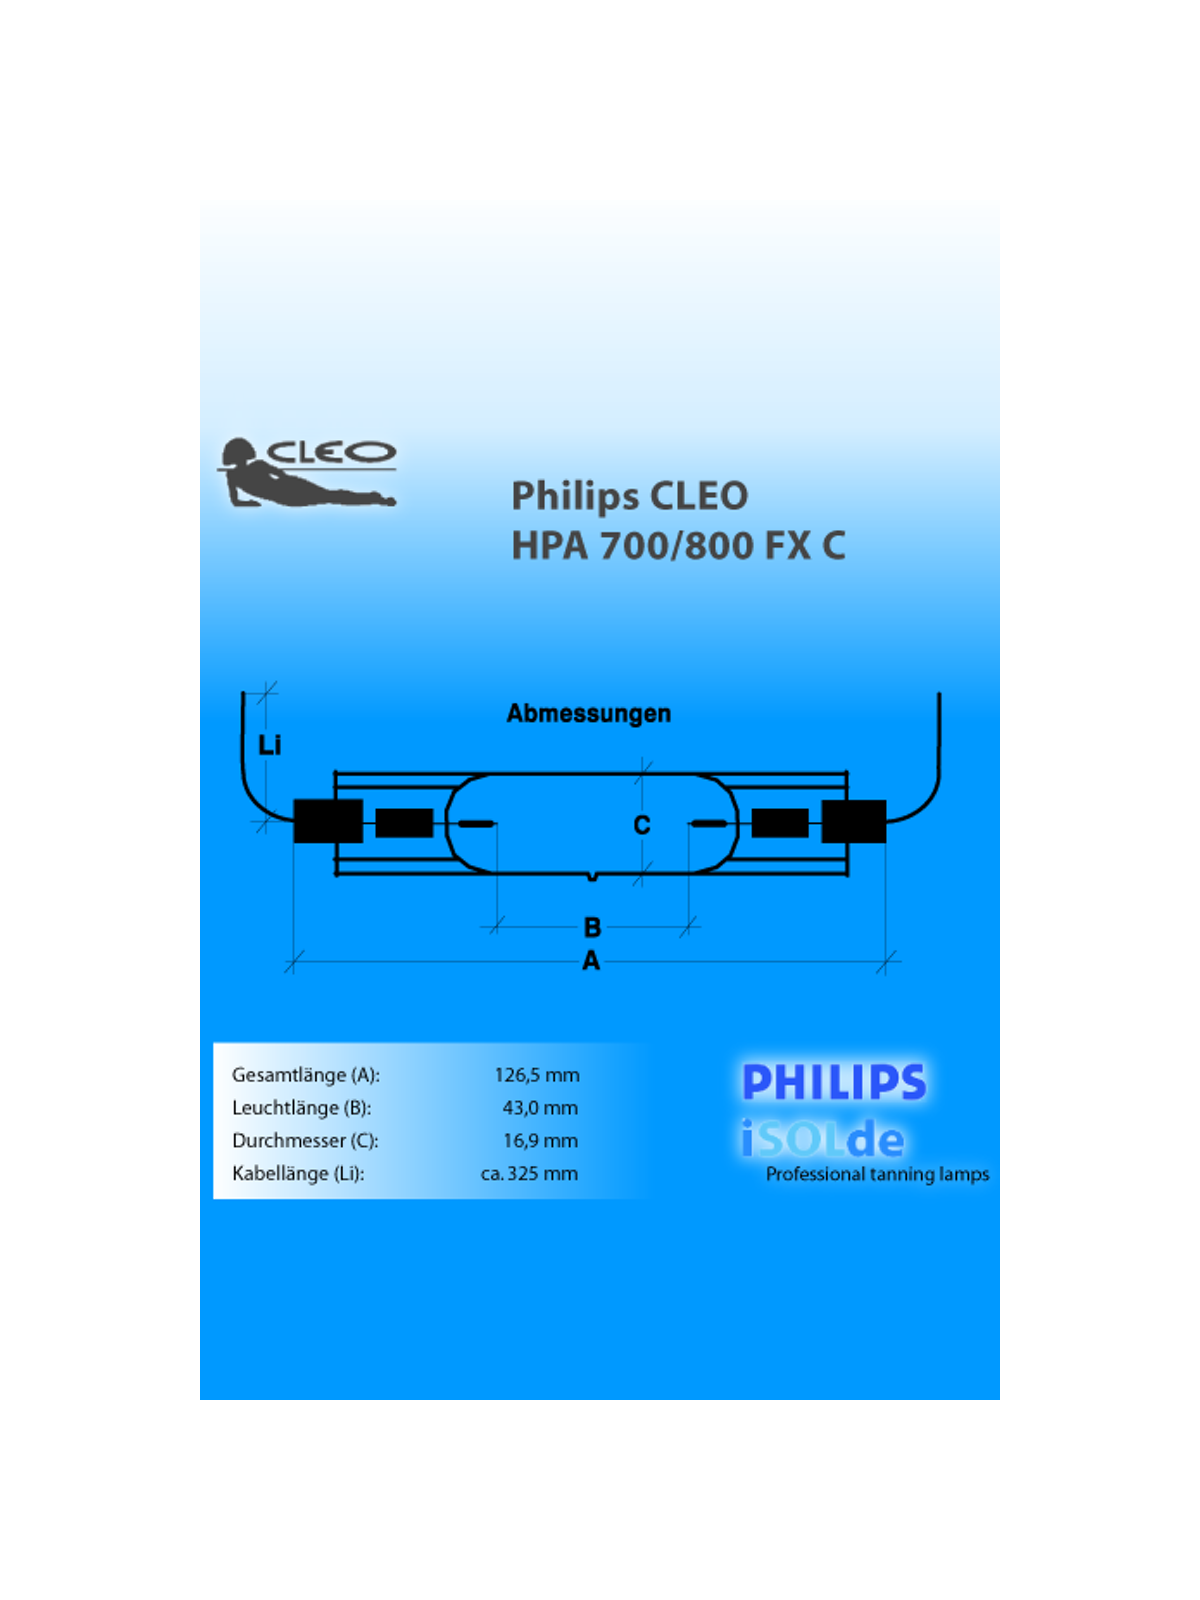 CLEO HPA 700/800 FX C